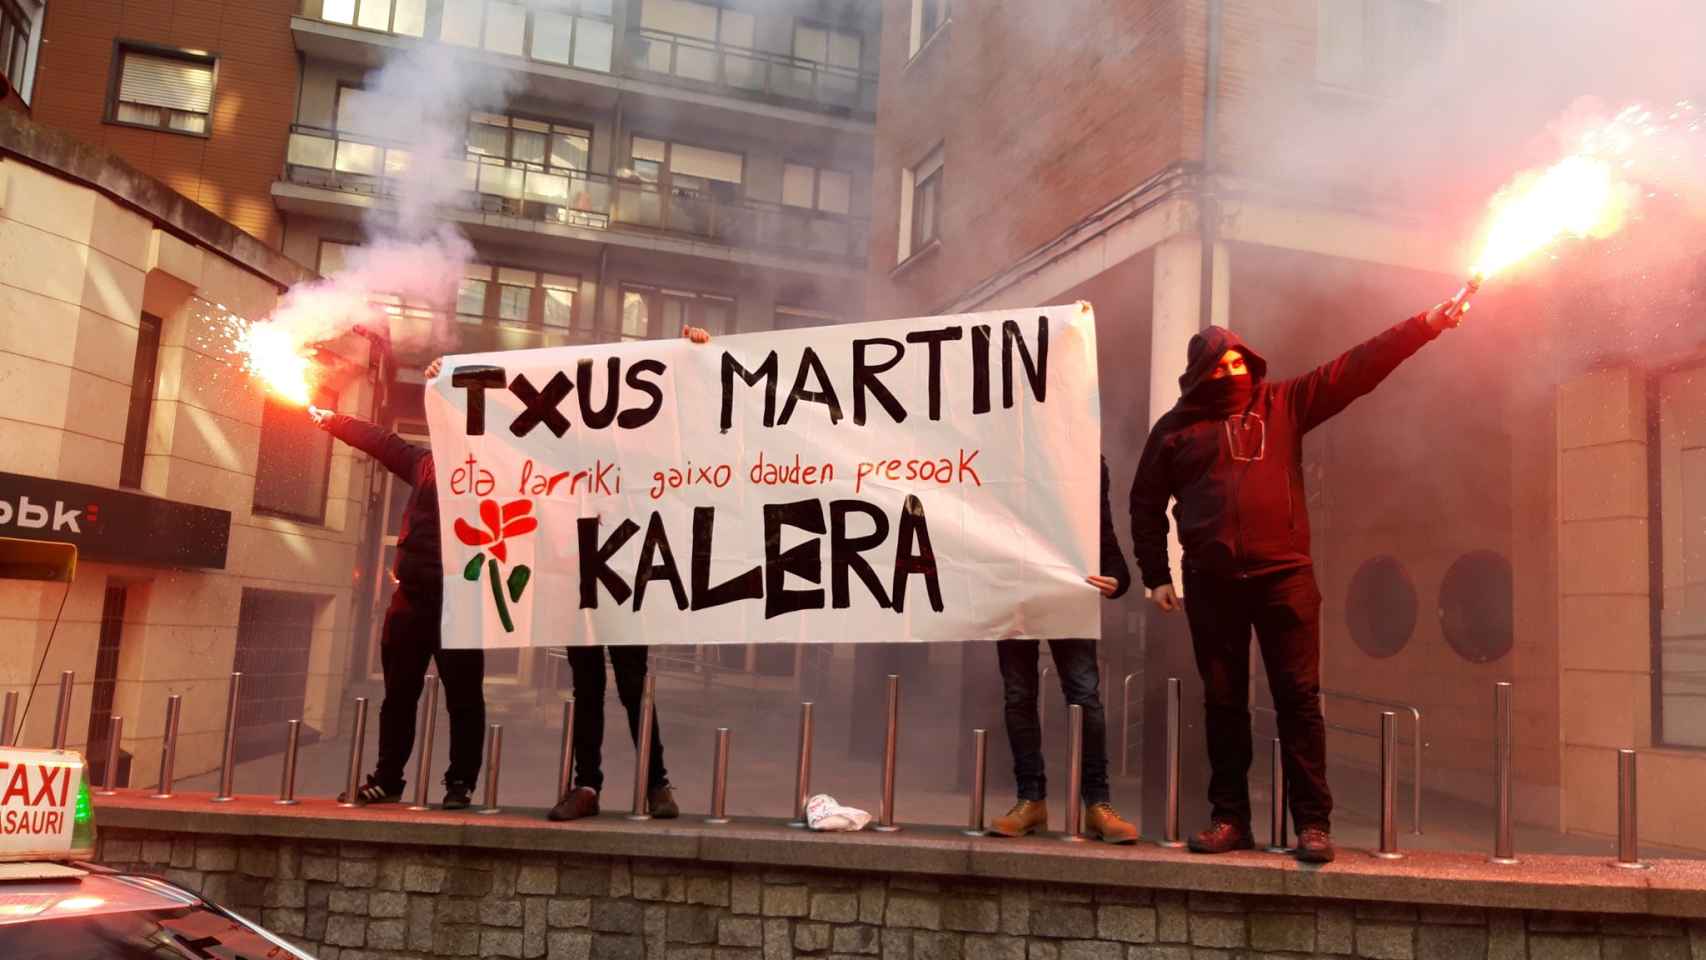 Un grupo de manifestantes abertzales pide la liberación del etarra Txus Martín en su pueblo natal, Basauri (Vizcaya), en diciembre de 2018.